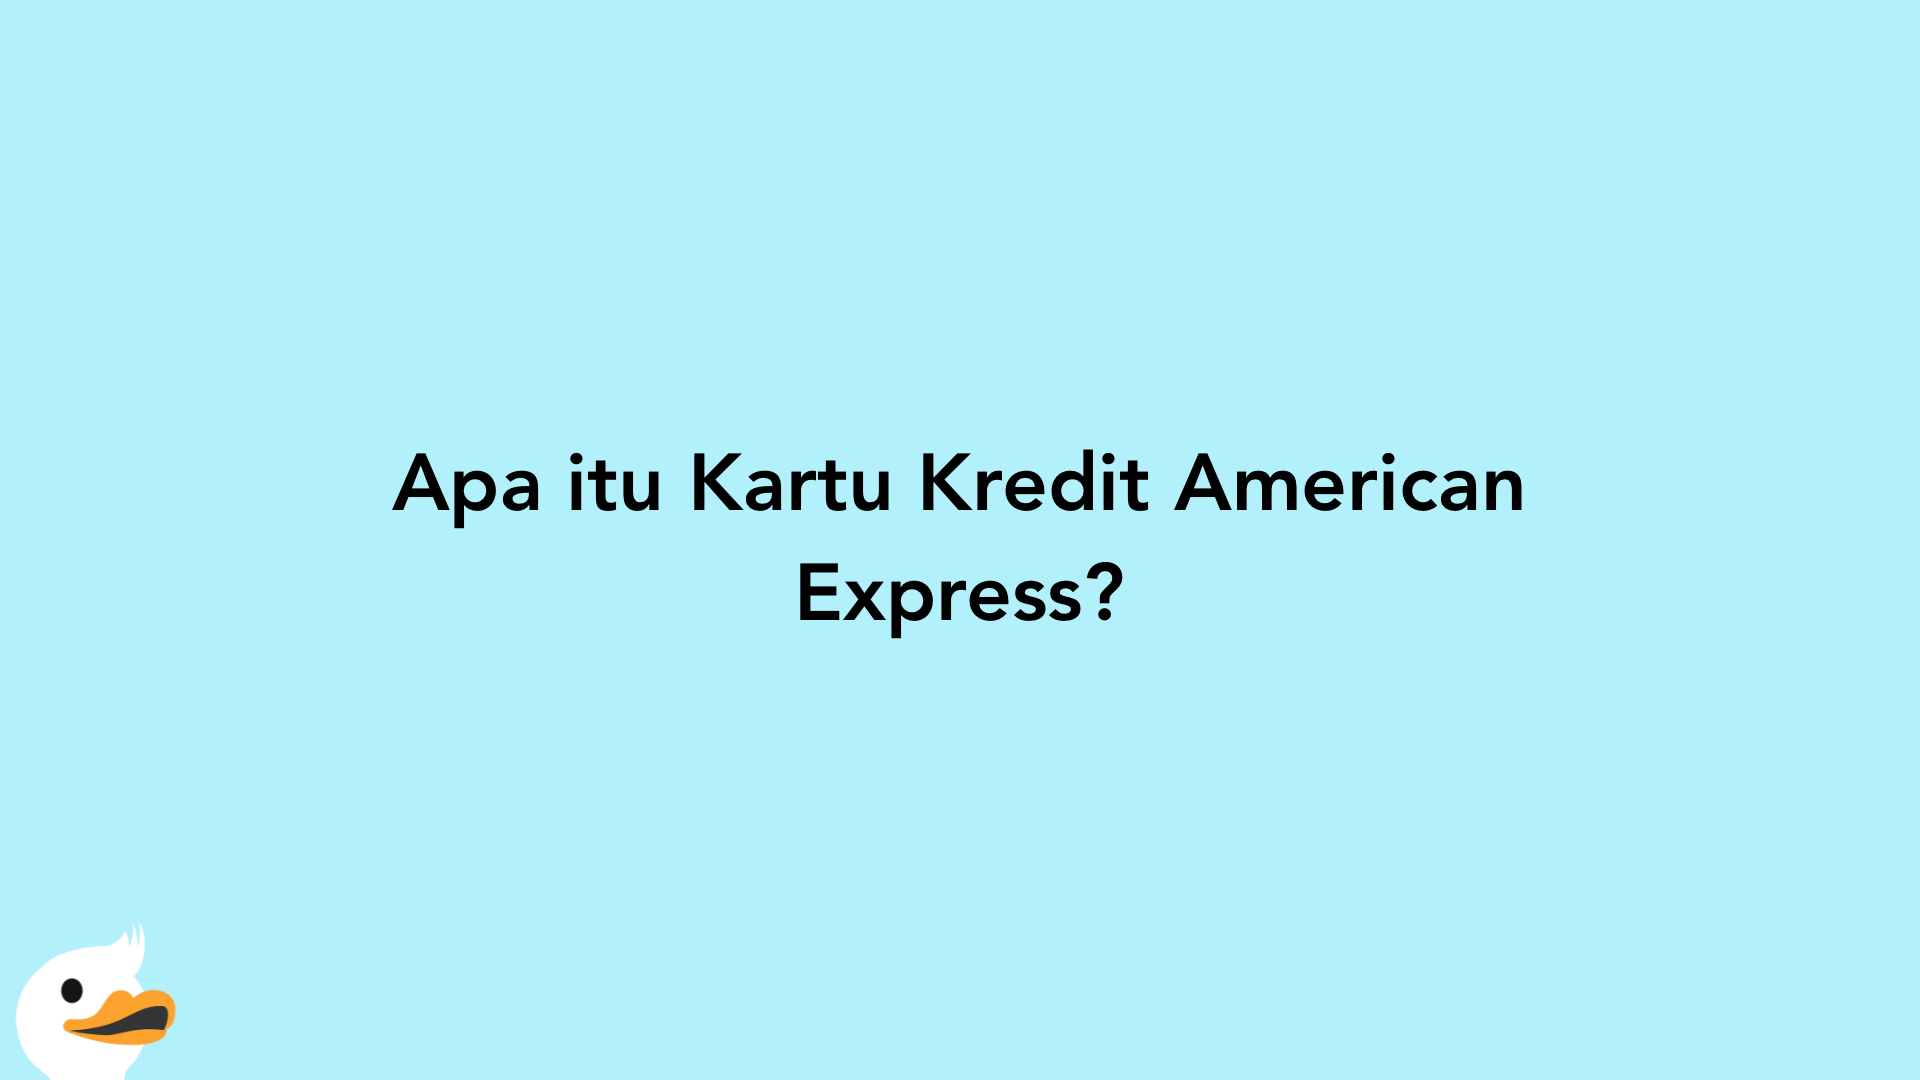 Apa itu Kartu Kredit American Express?